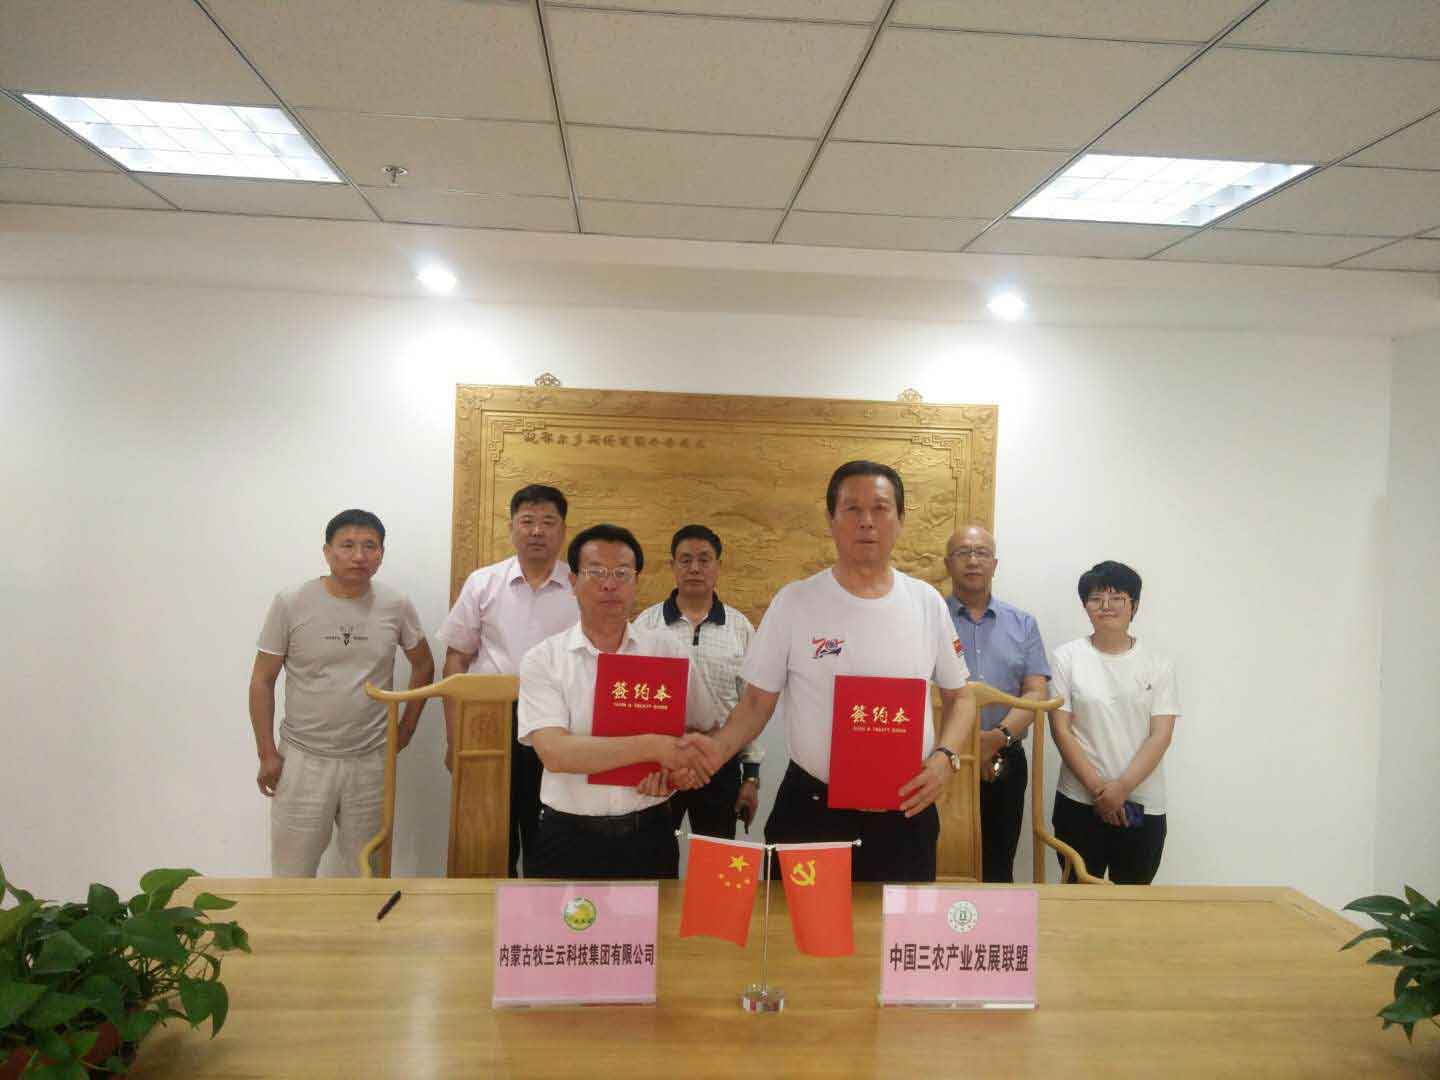 中国三农产业发展联盟主席万云华 视察牧兰云运行情况并达成战略合作